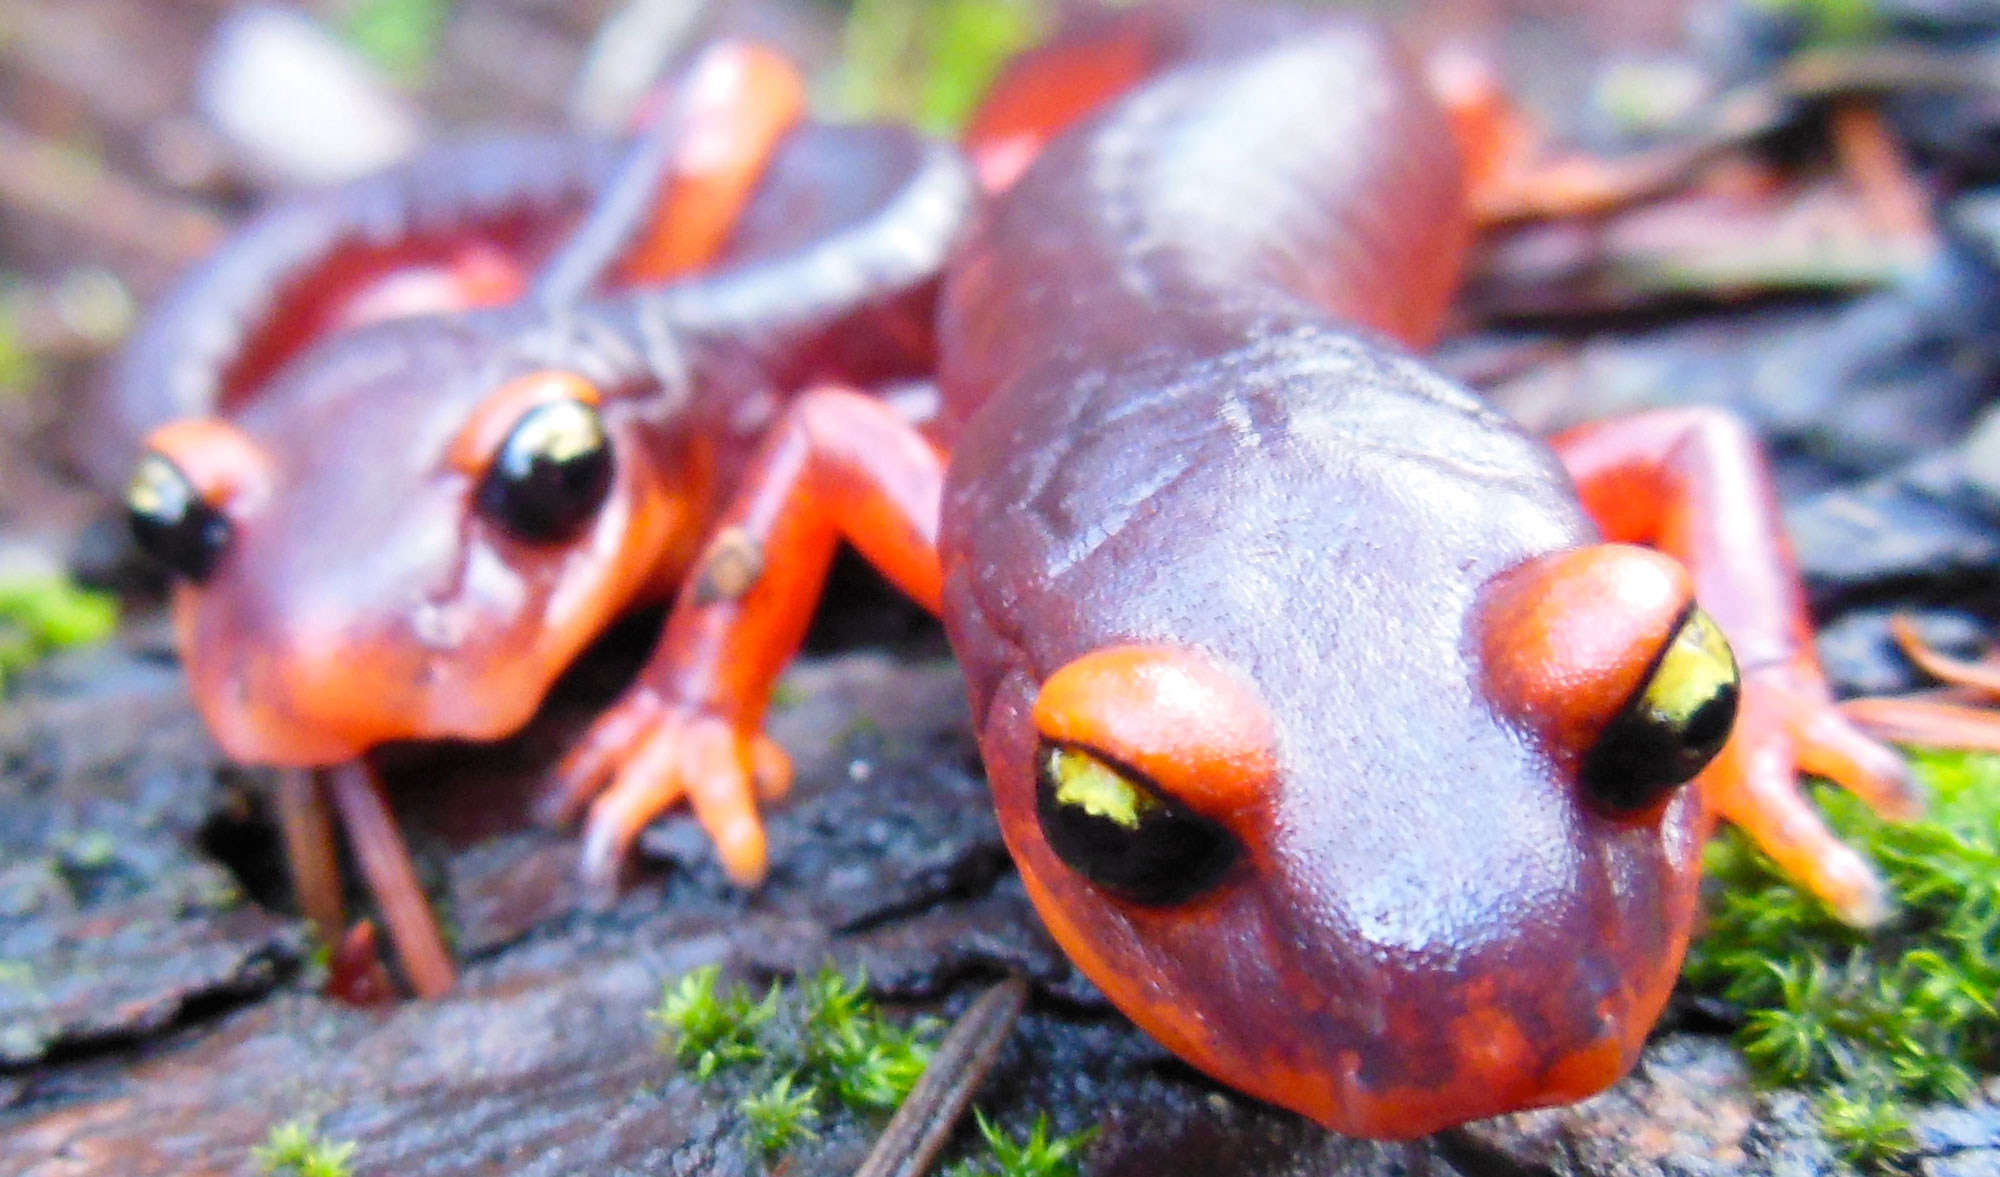 A photo of an Ensatina salamander